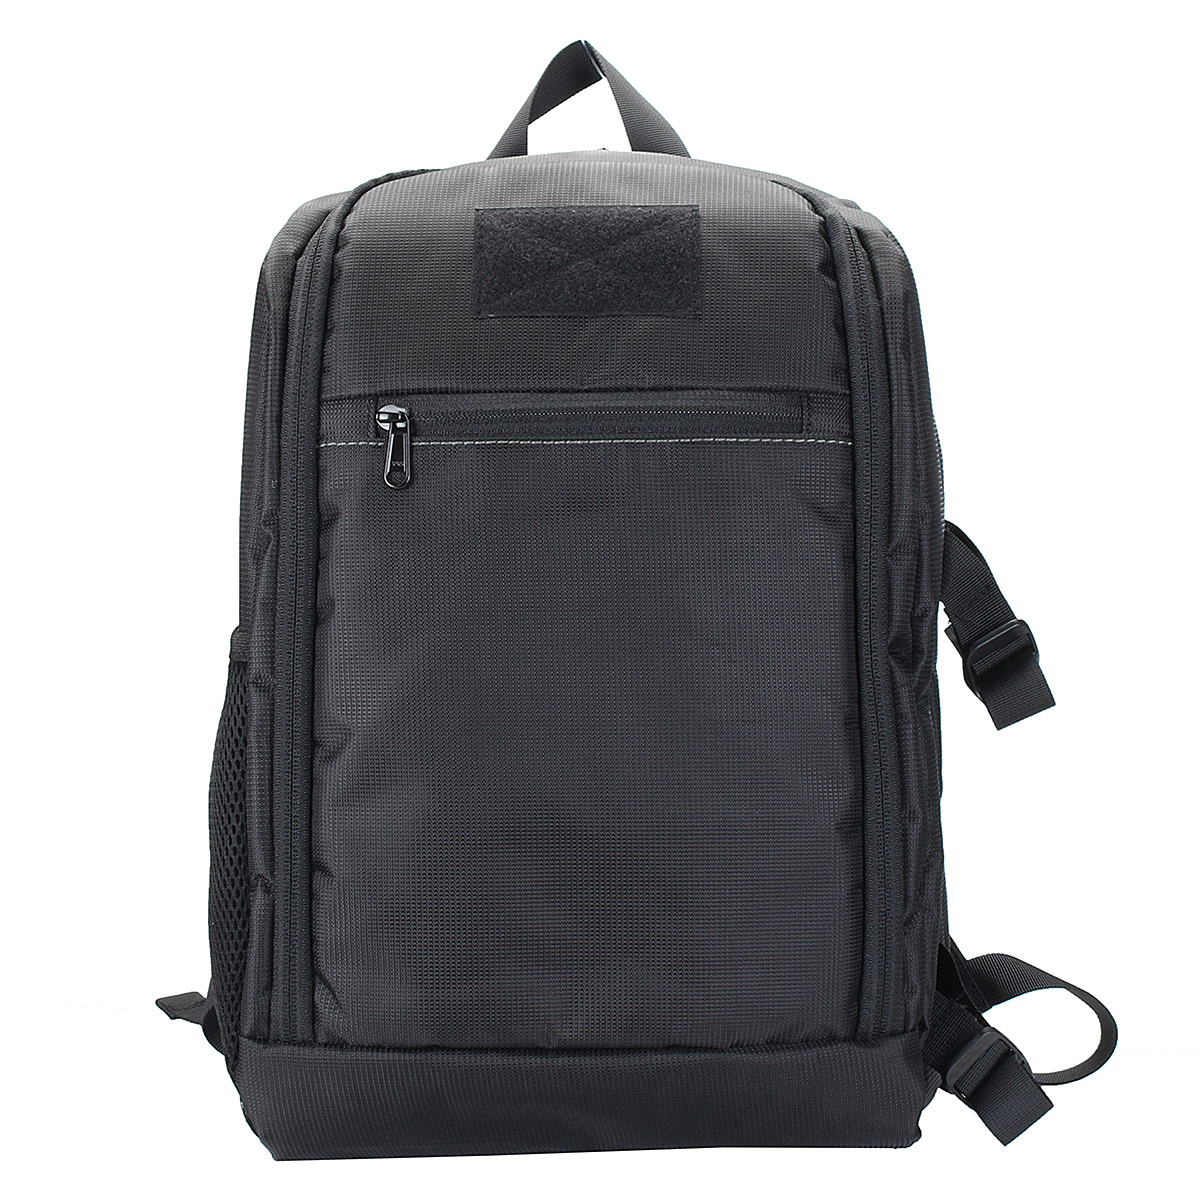 Waterproof Backpack Shoulder Bag Laptop Case For DSLR Camera Lens Accessories 12